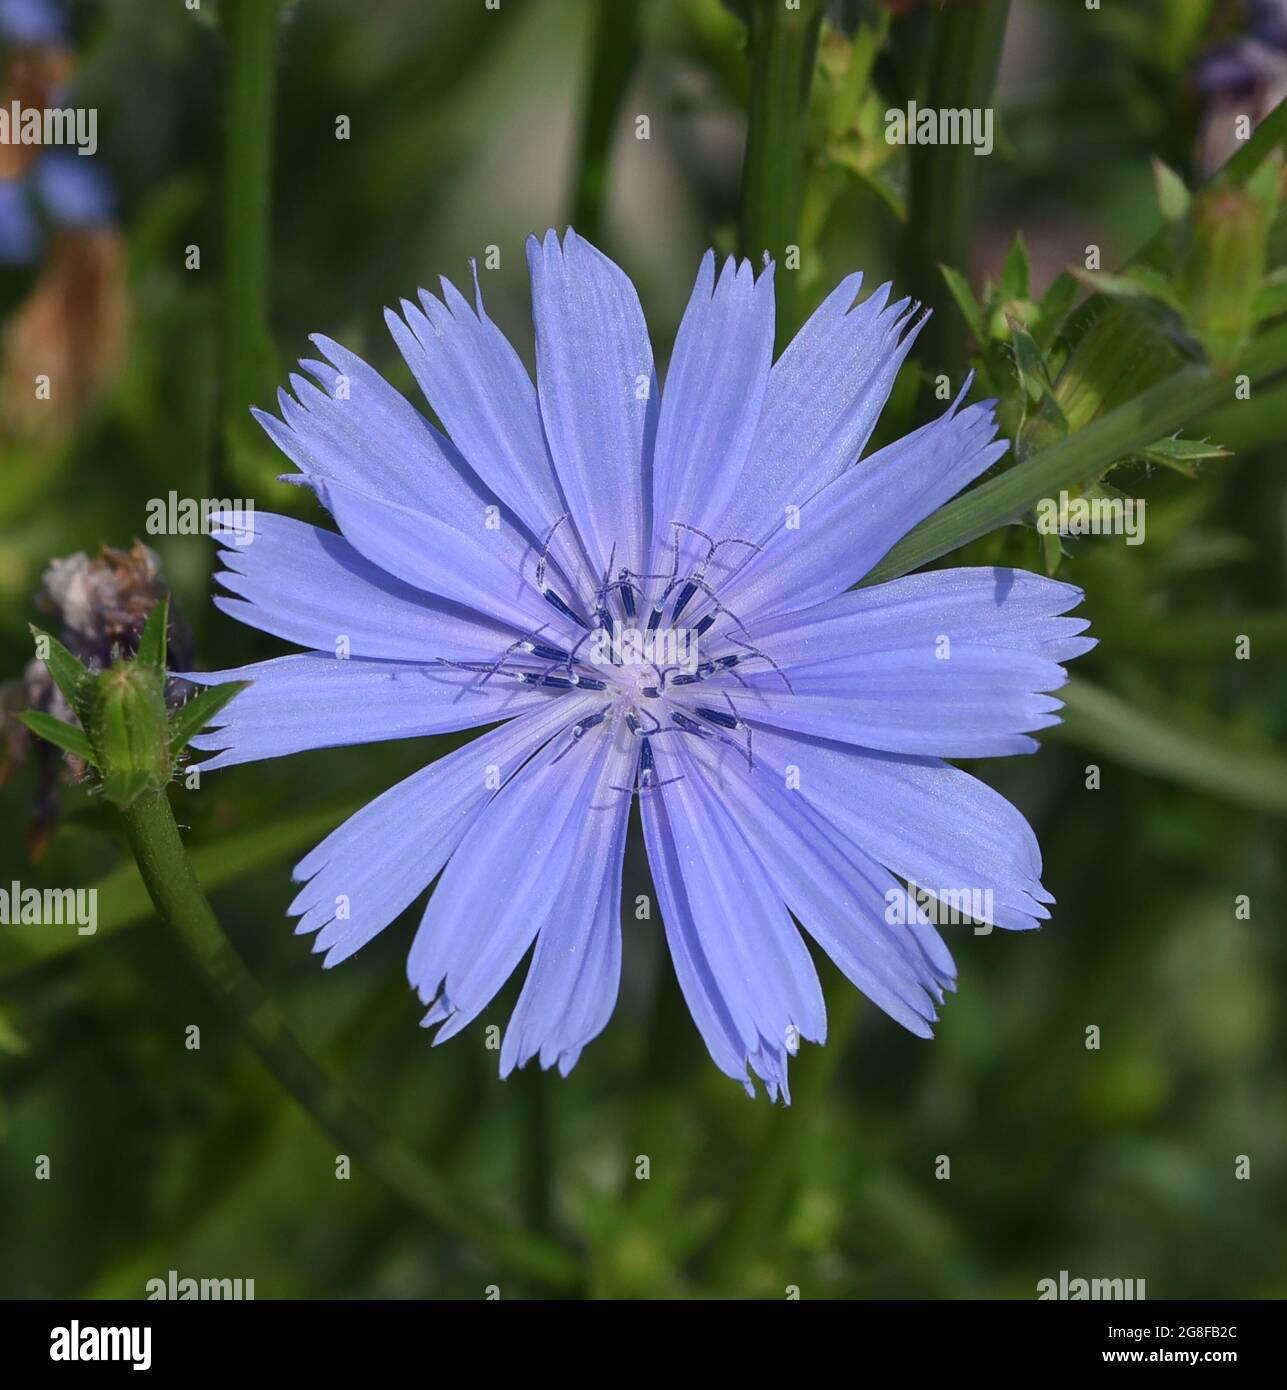 , Wegwarte Cichorium intybus, ist eine Wild- und Heilpflanze mit blauen Blueten. Die blueten sind essbar. Chicorée, Cichorium intybus, ist ein wildes und Med Stockfoto